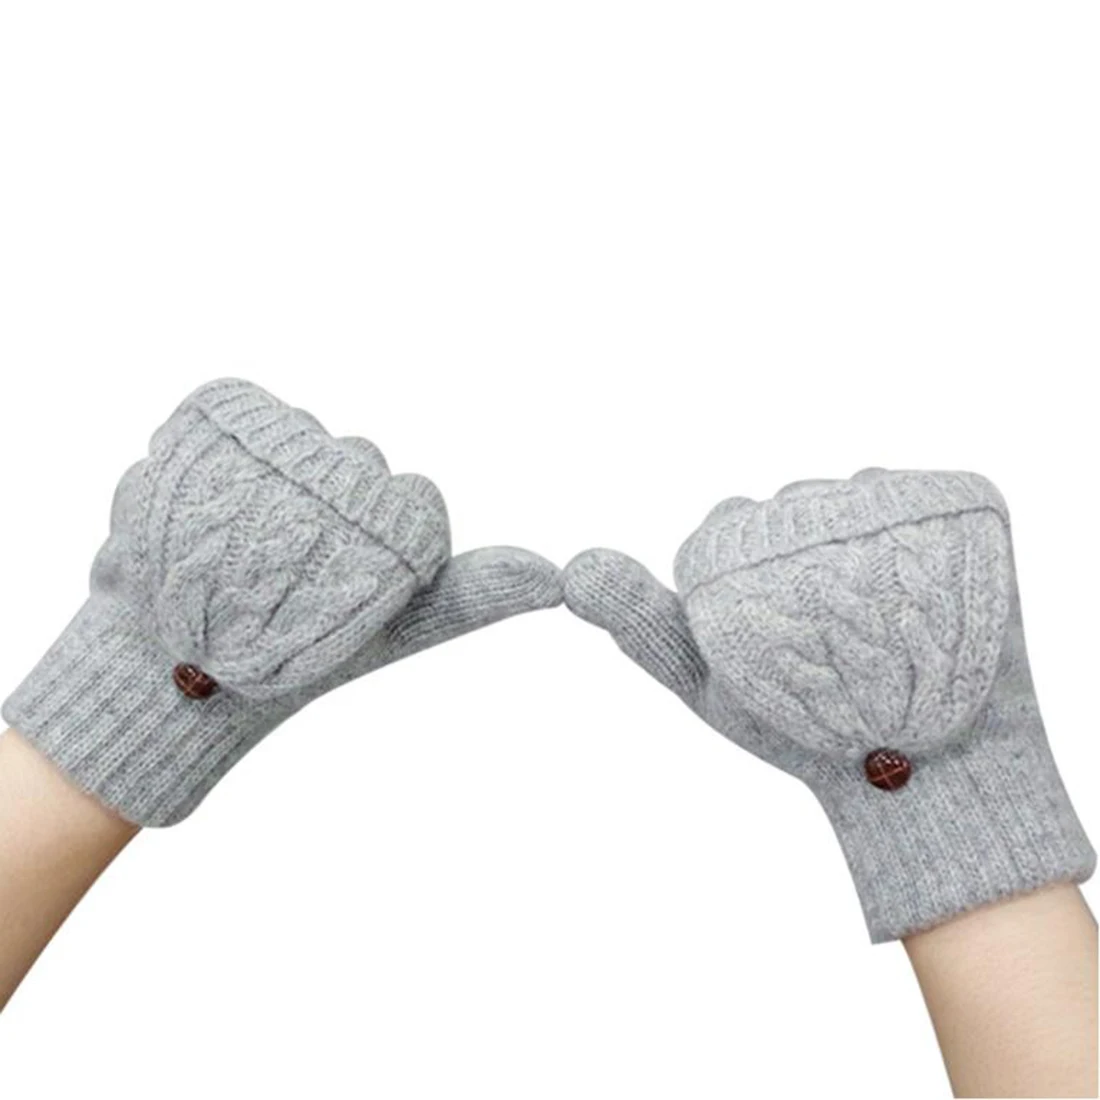 Зимние перчатки, женские вязаные рукавицы, теплые перчатки без пальцев, шерстяные перчатки для девушек, зимние женские перчатки